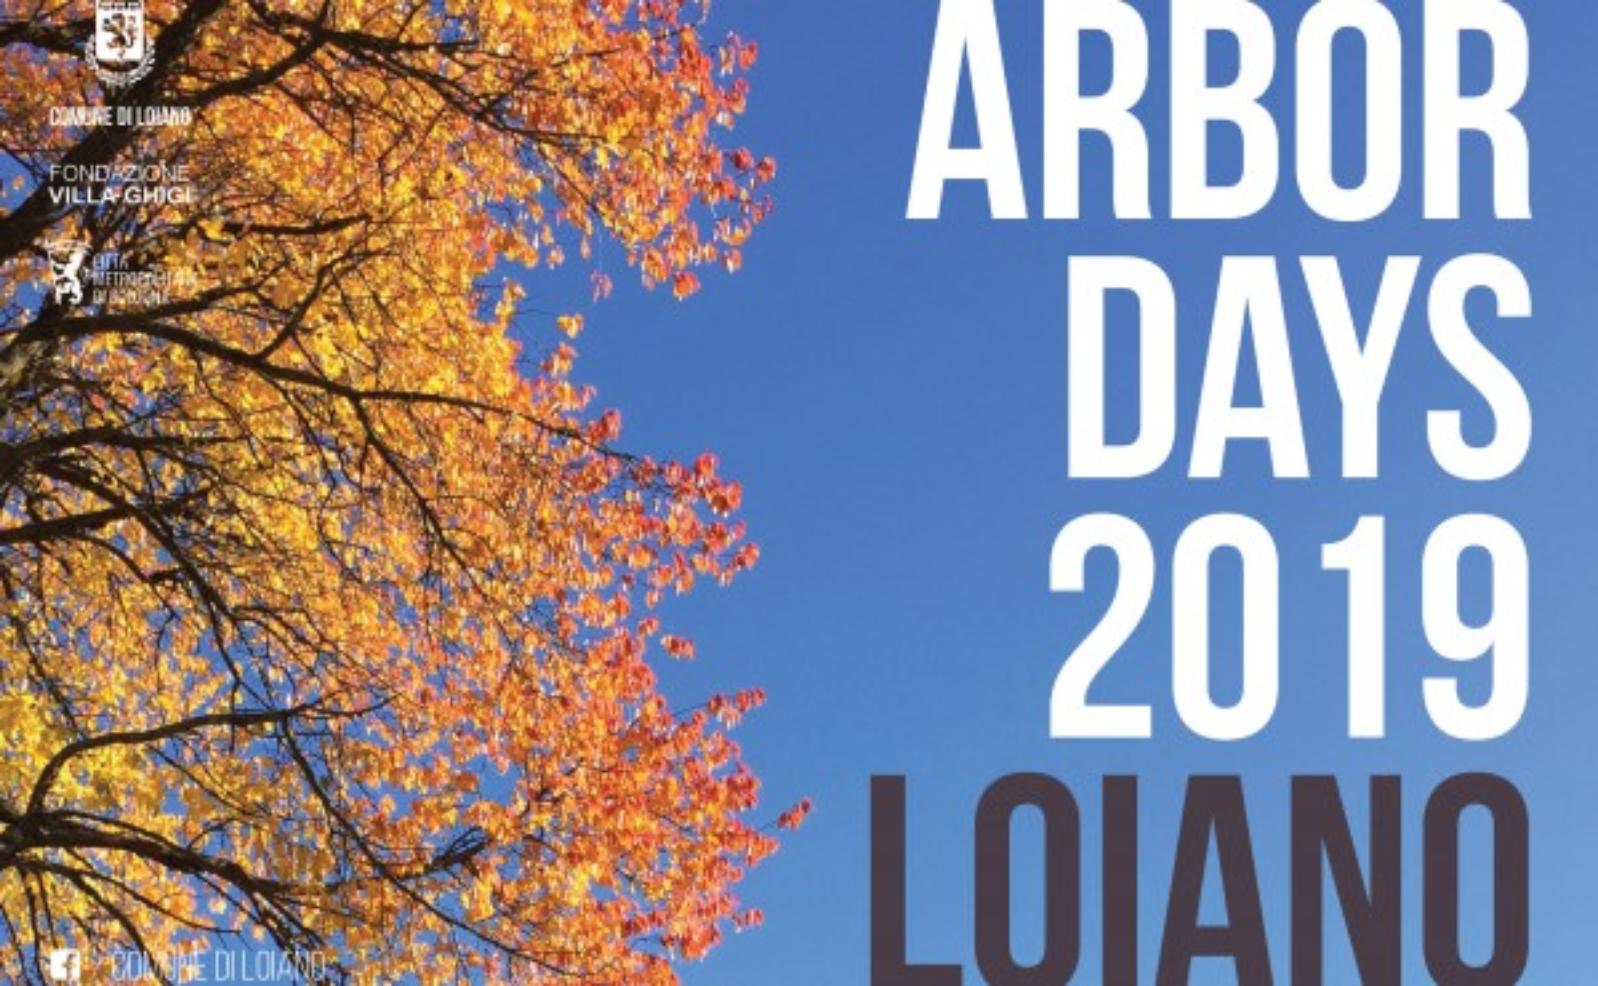 Arbor Days 2019 - Loiano